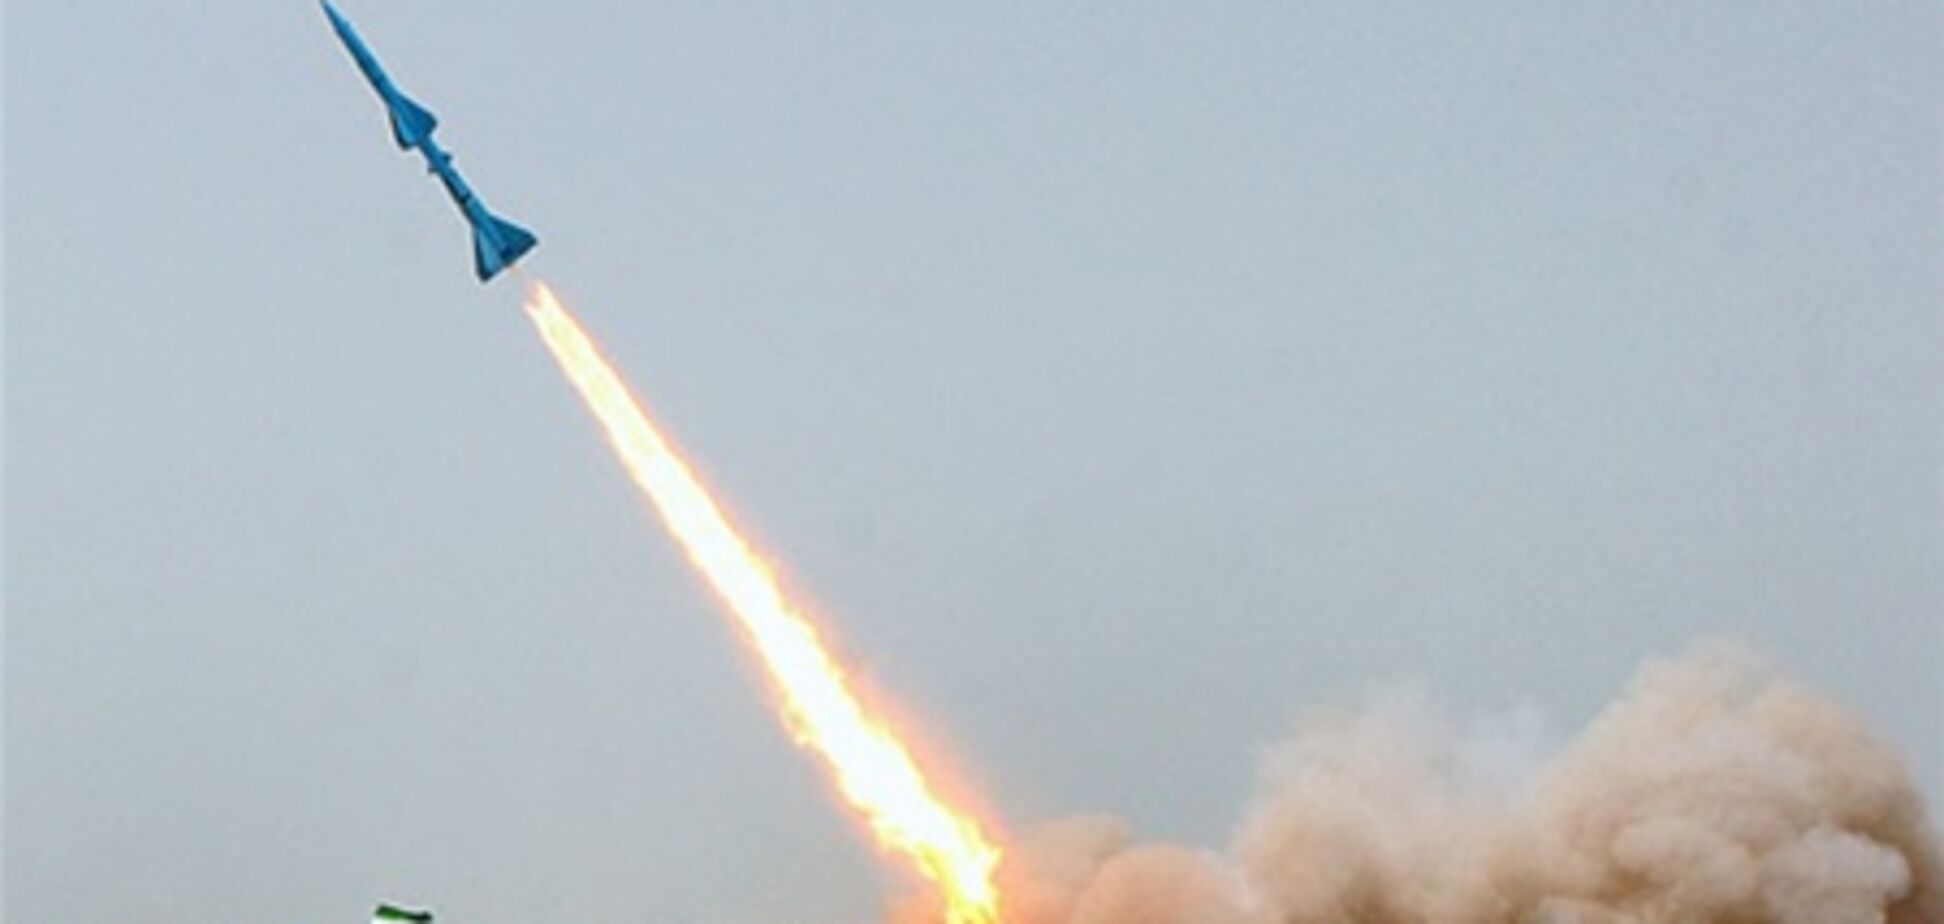 Іран повідомив про успішний пуск балістичних ракет у бік Індійського океану